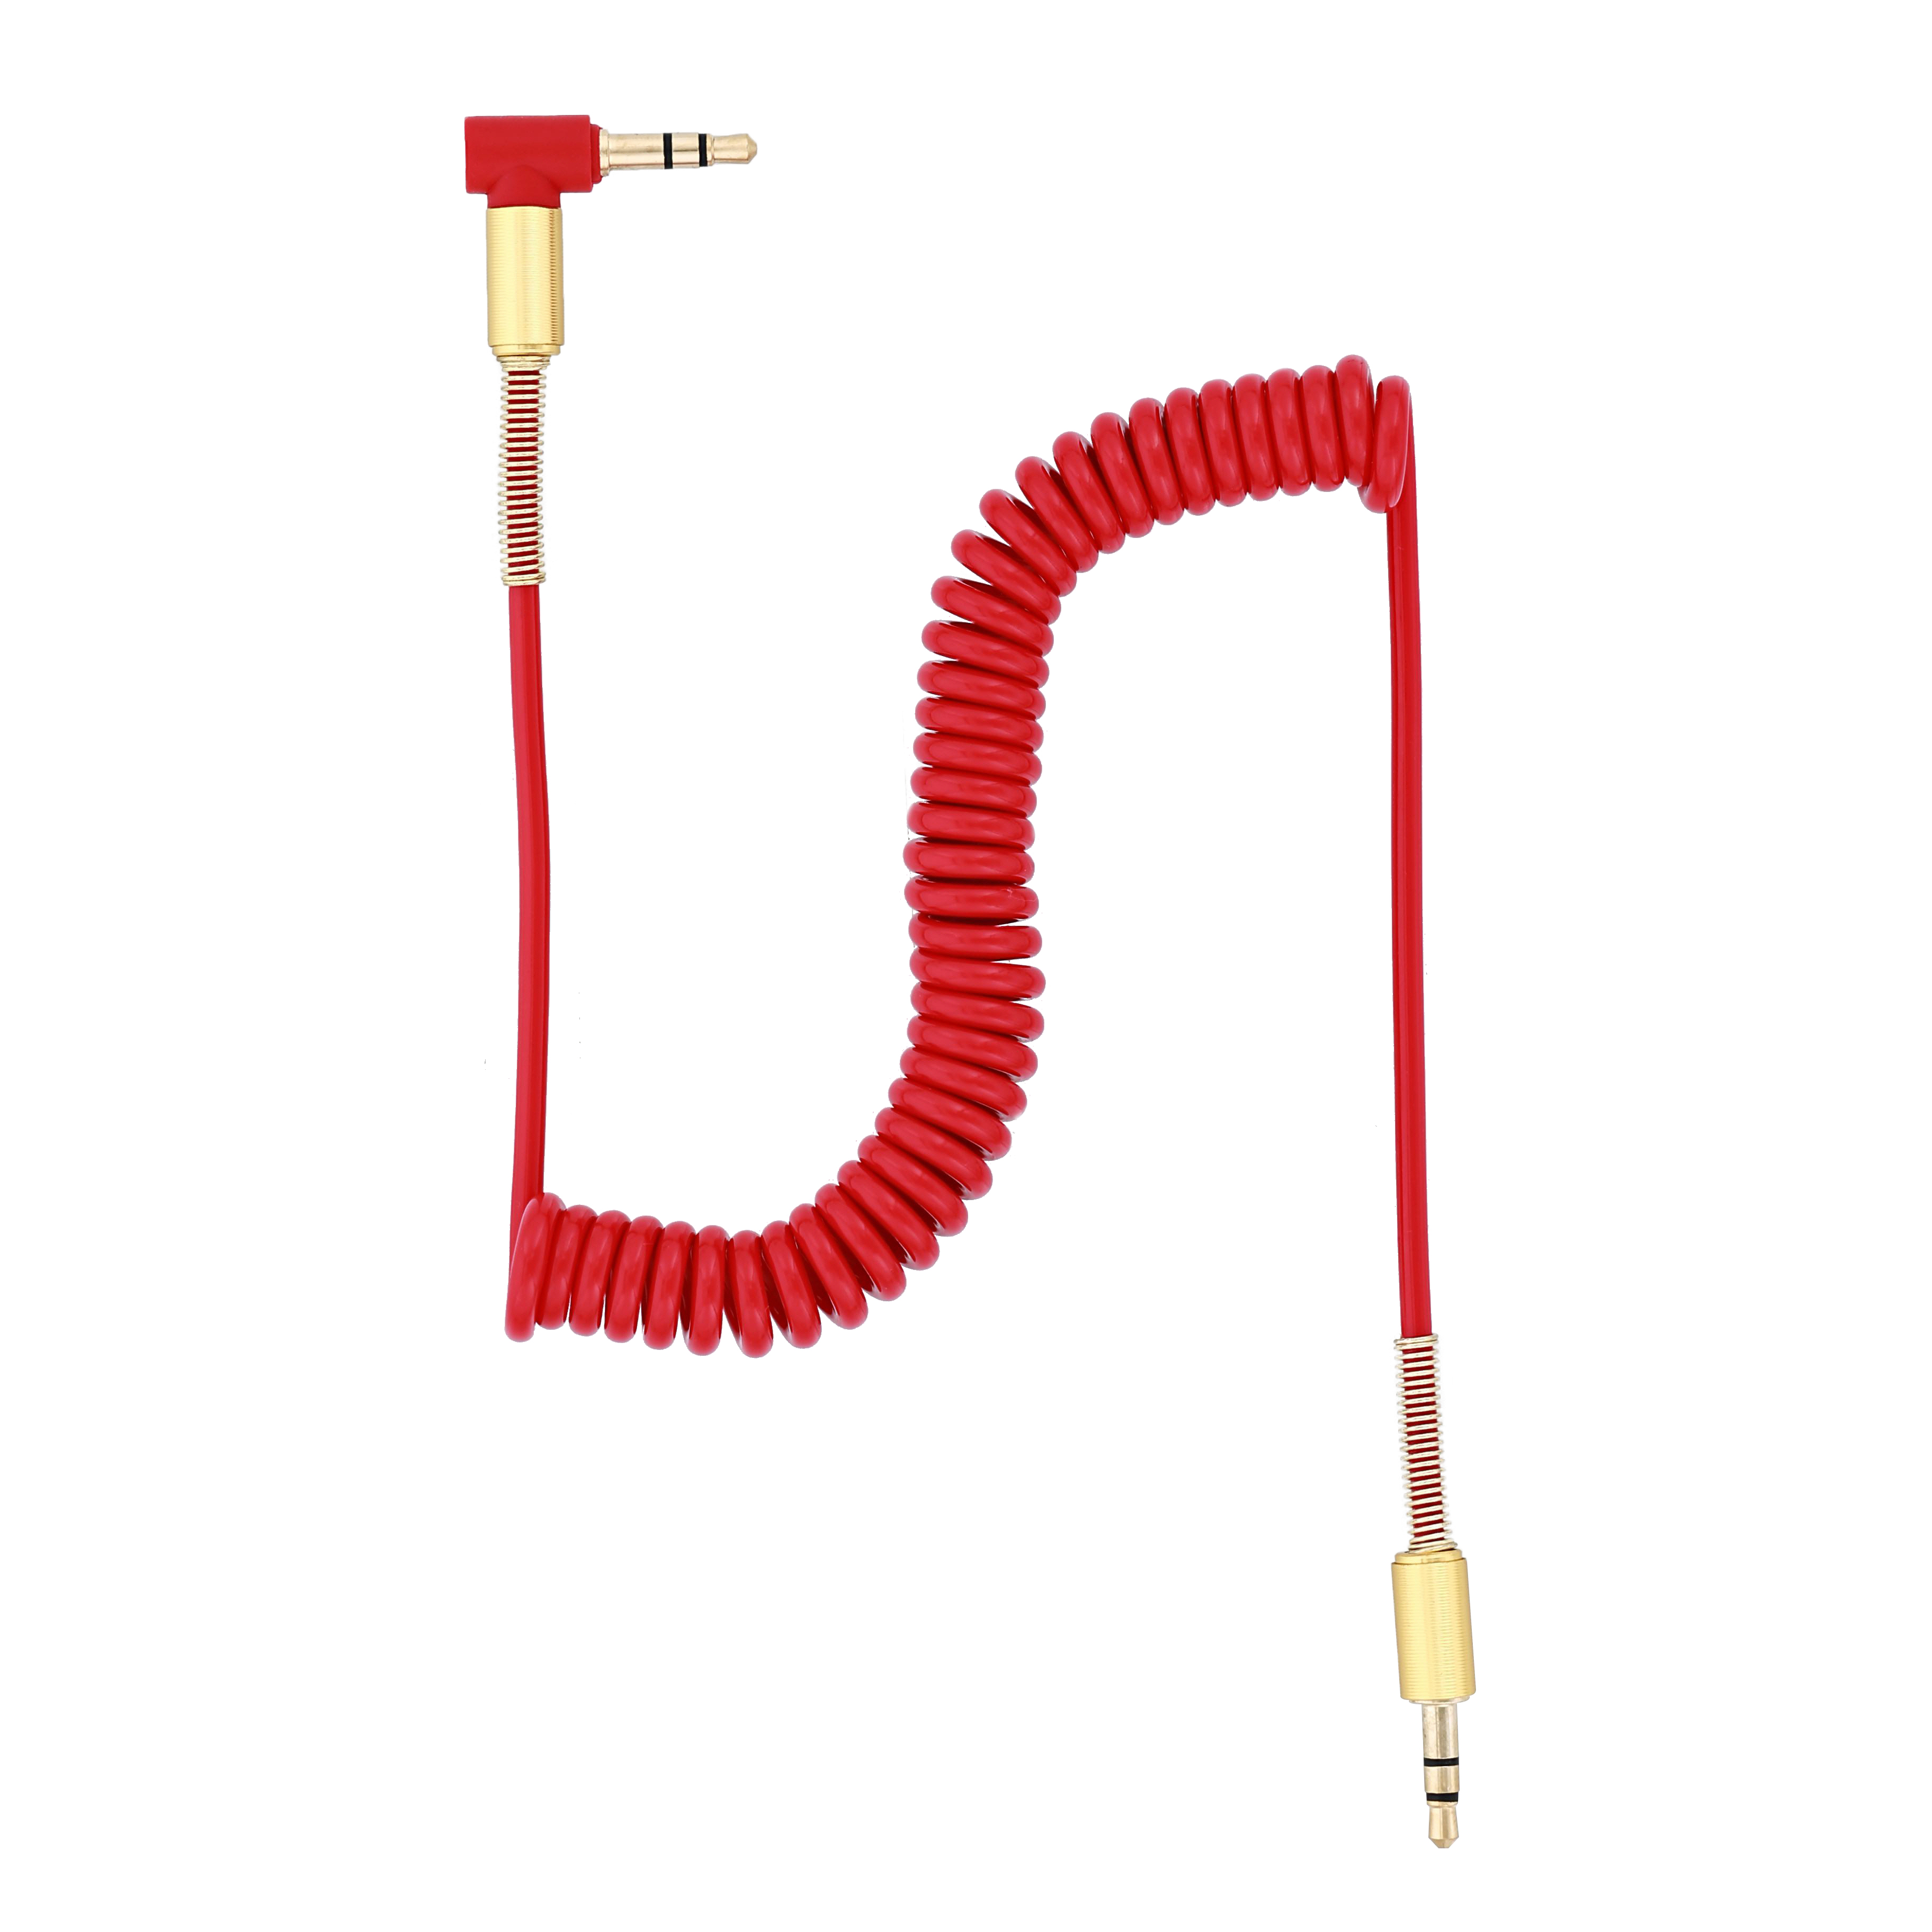 TELLUR cm Cable, Klinke 3,5 mm, m, 1,5 150 Audio